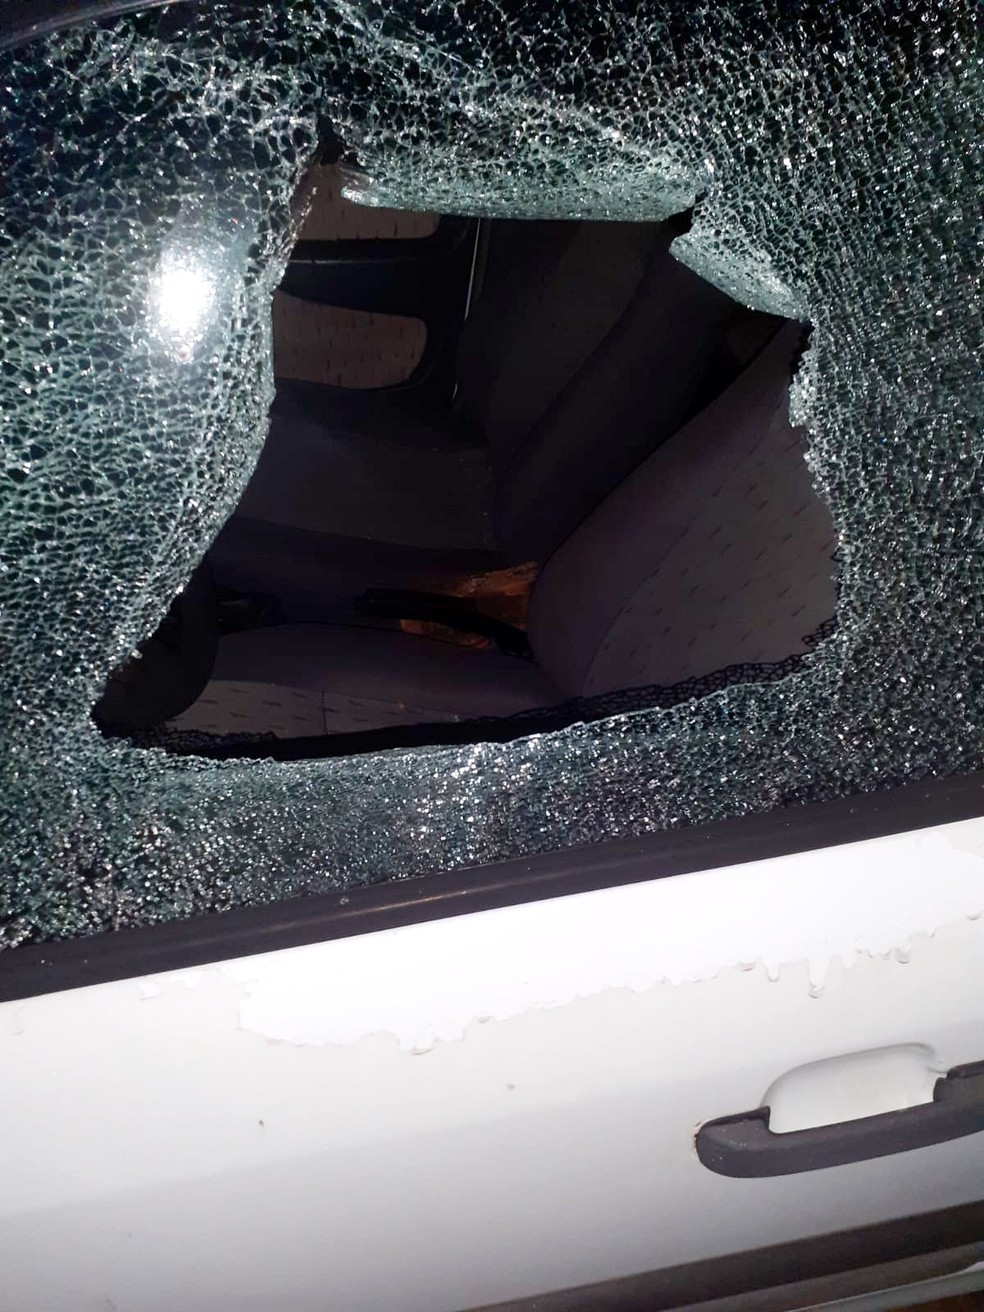 Motociclista ataca guarita de condomínio e quebra vidro de veículo em Bauru — Foto: Arquivo pessoal